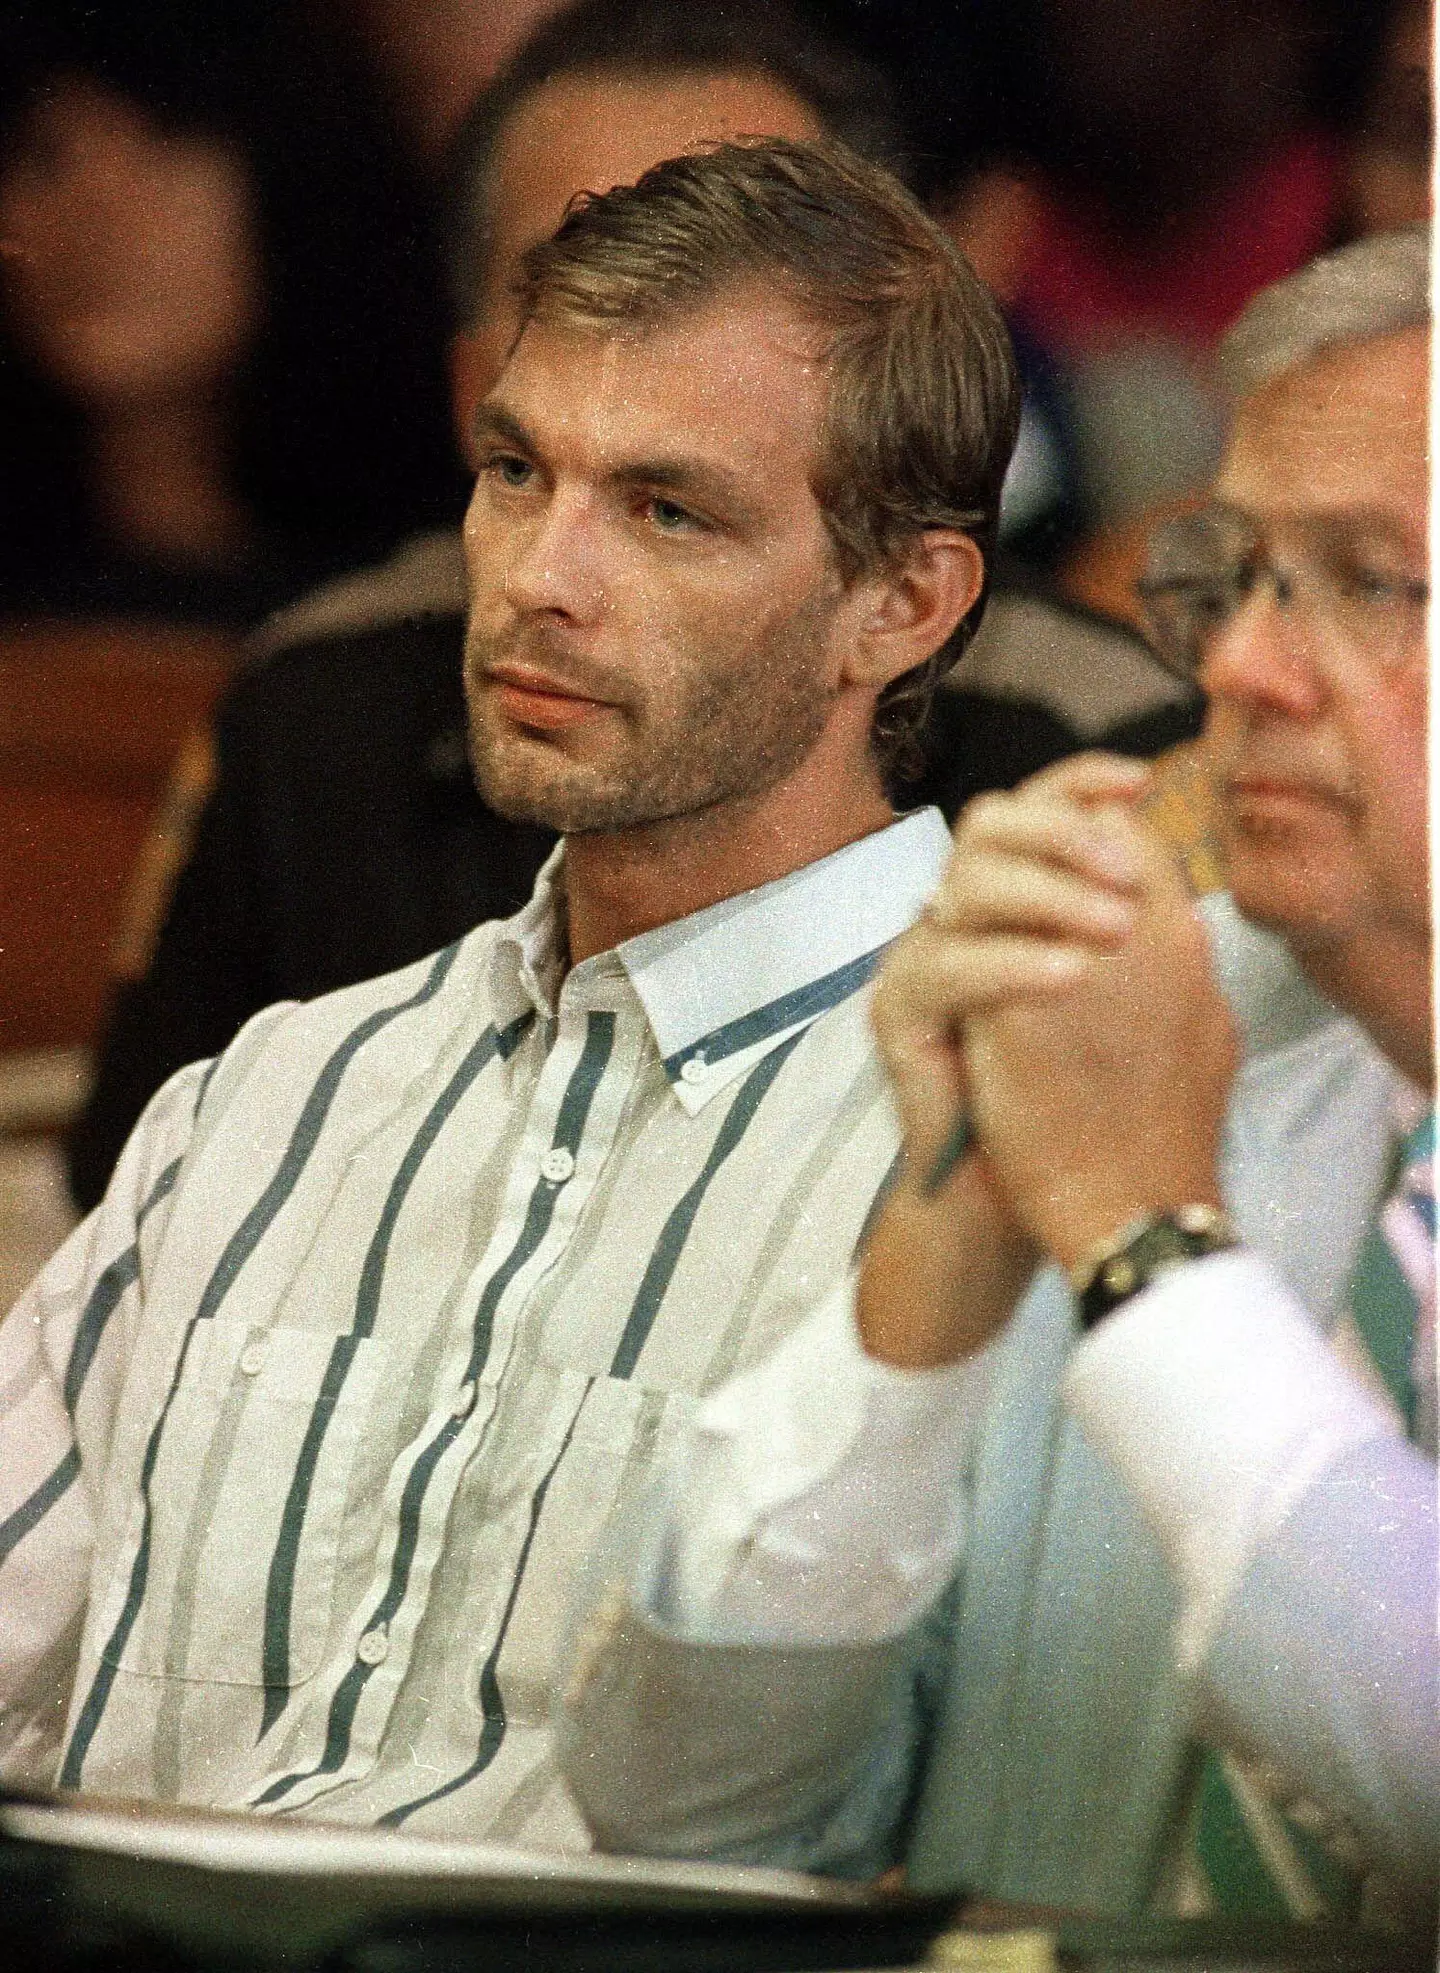 Jeffrey Dahmer in court.